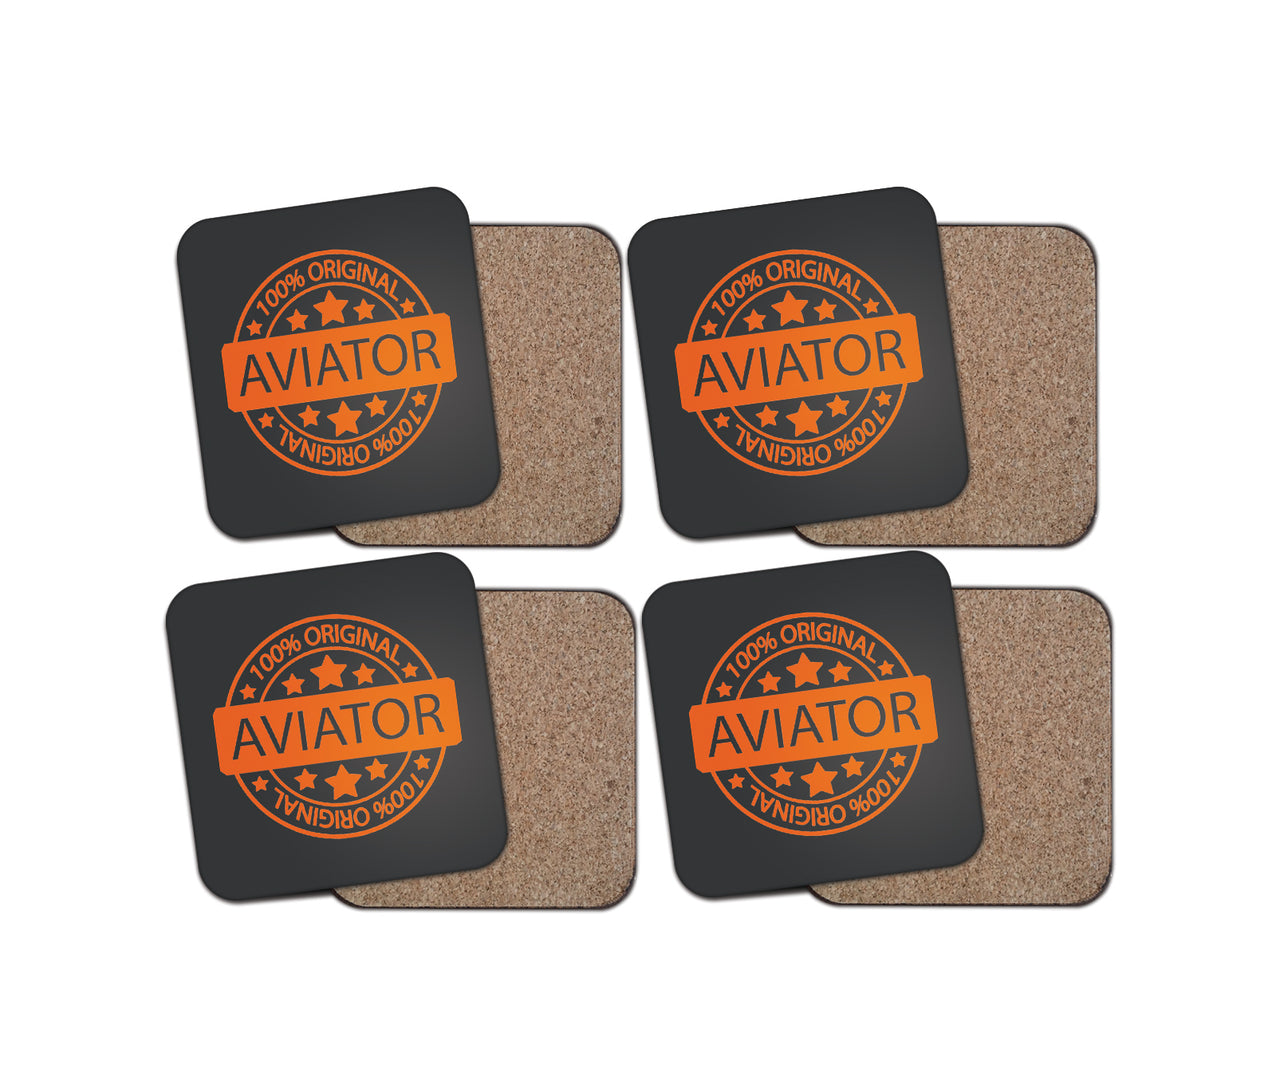 100 Original Aviator Designed Coasters